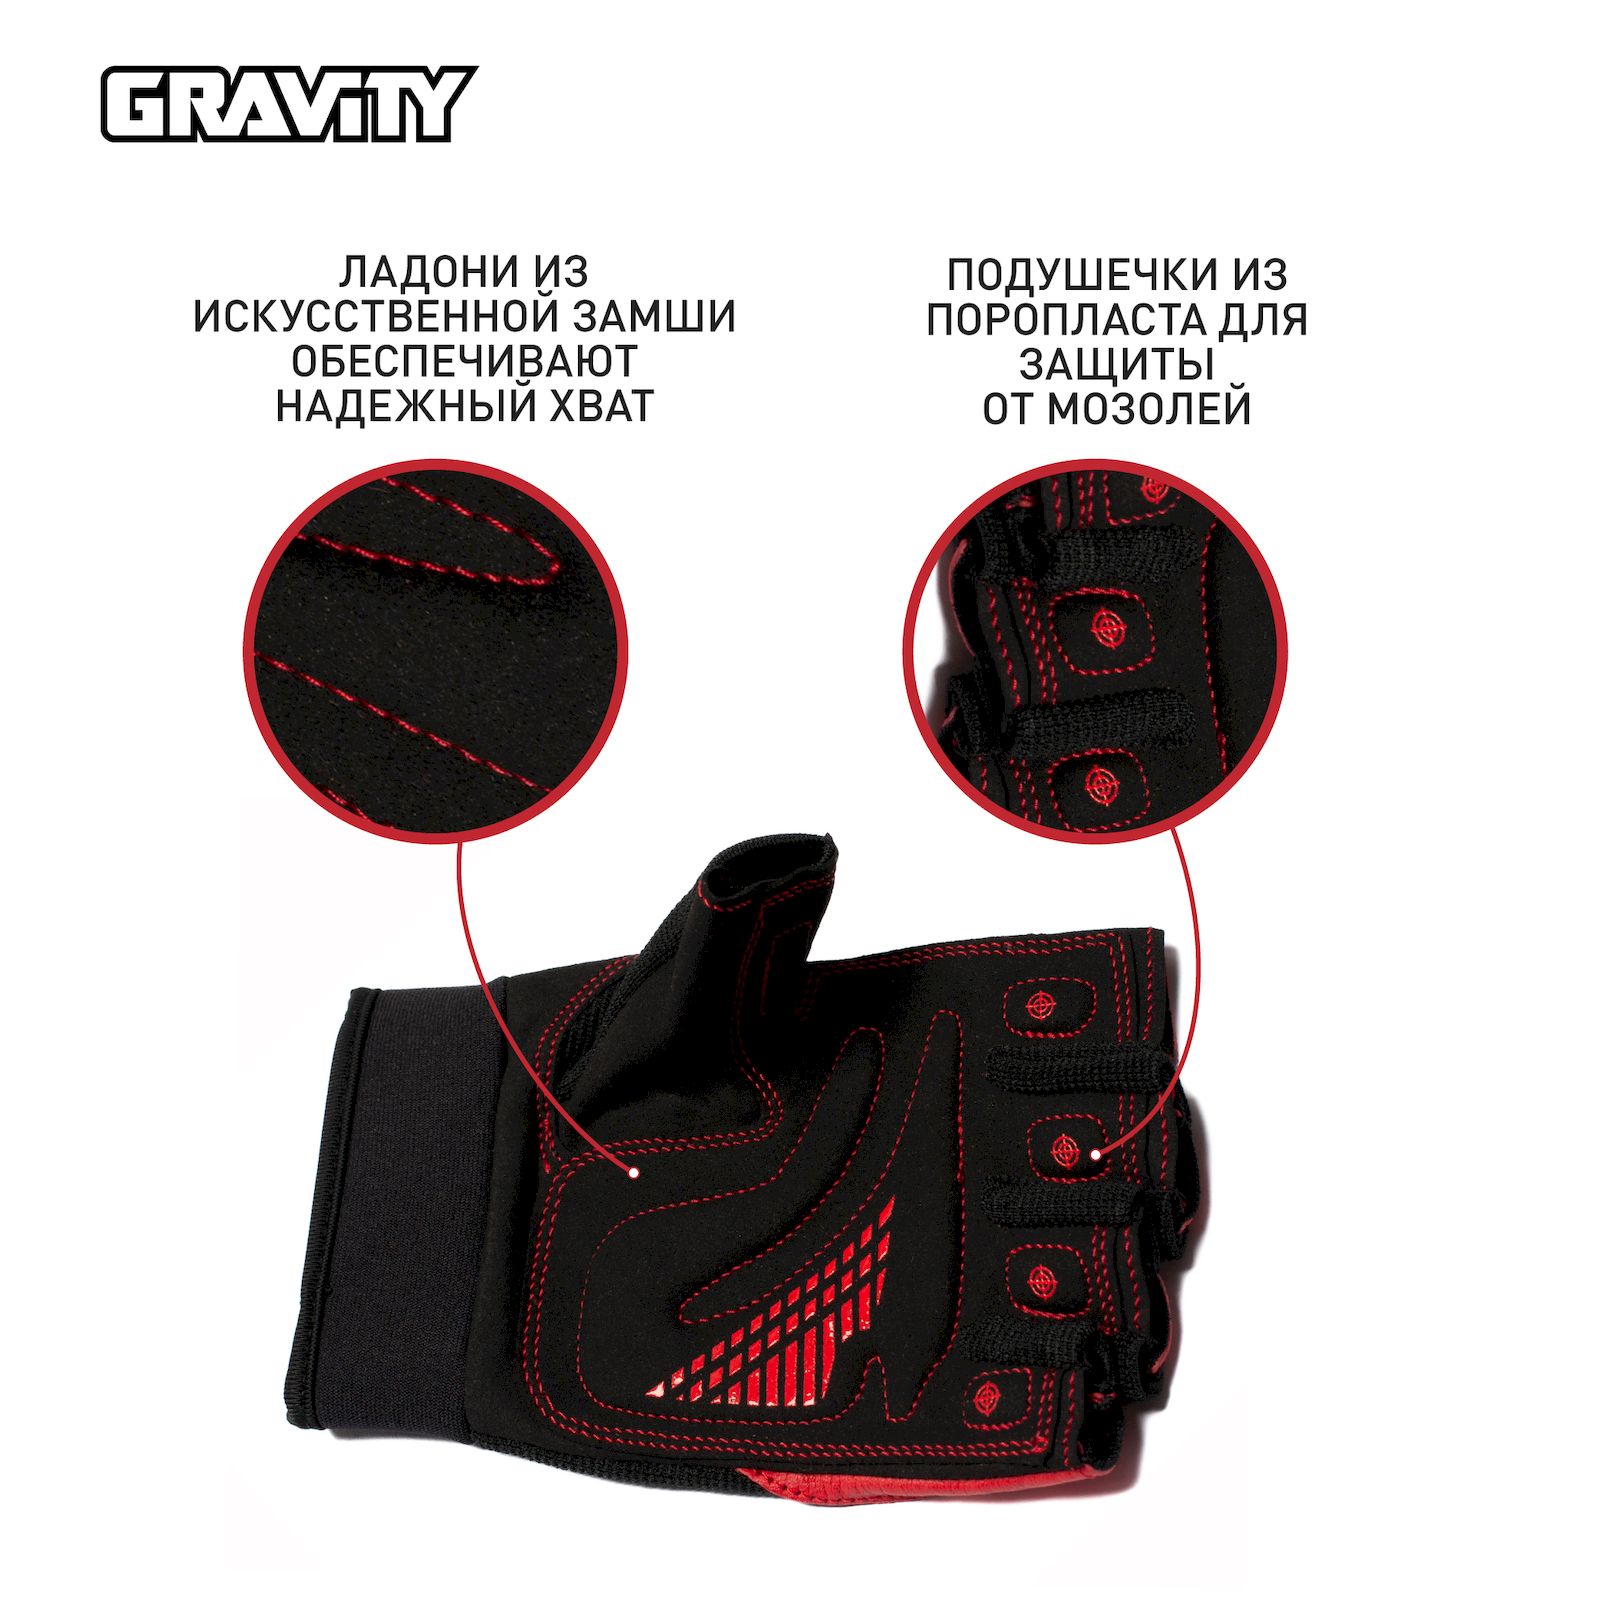 Мужские перчатки для фитнеса Gravity Gel Performer черно-красные, S